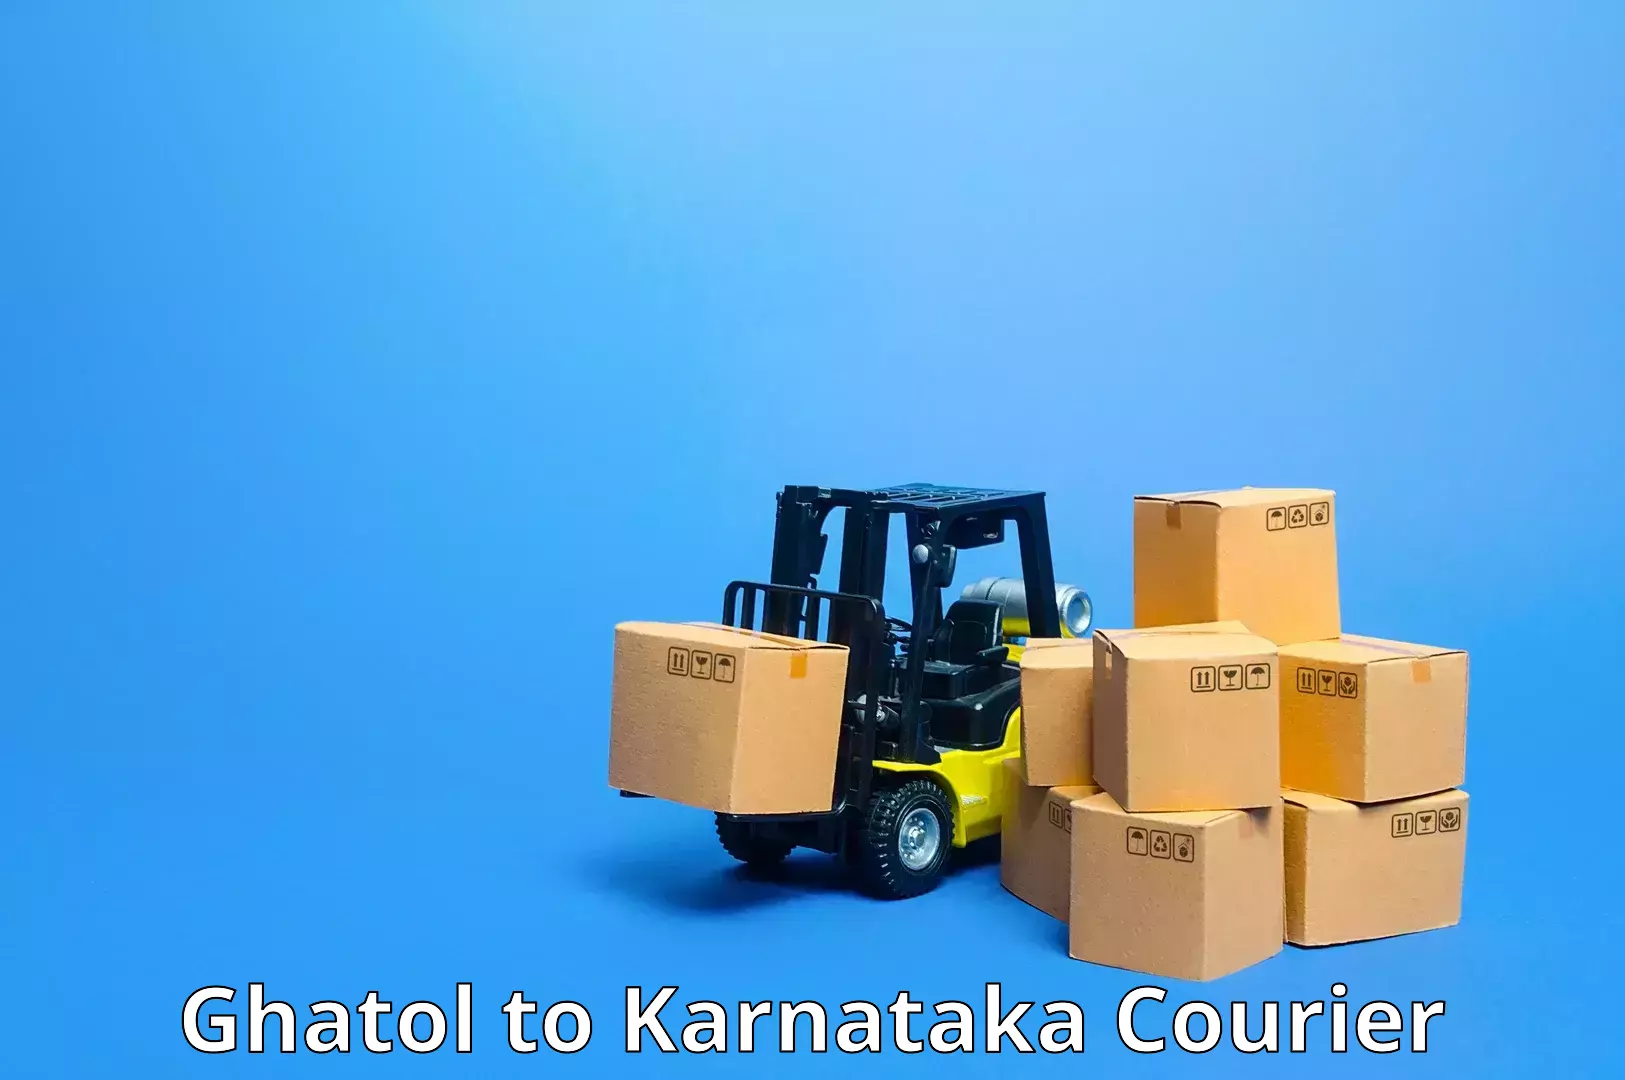 Reliable shipping partners Ghatol to Karnataka